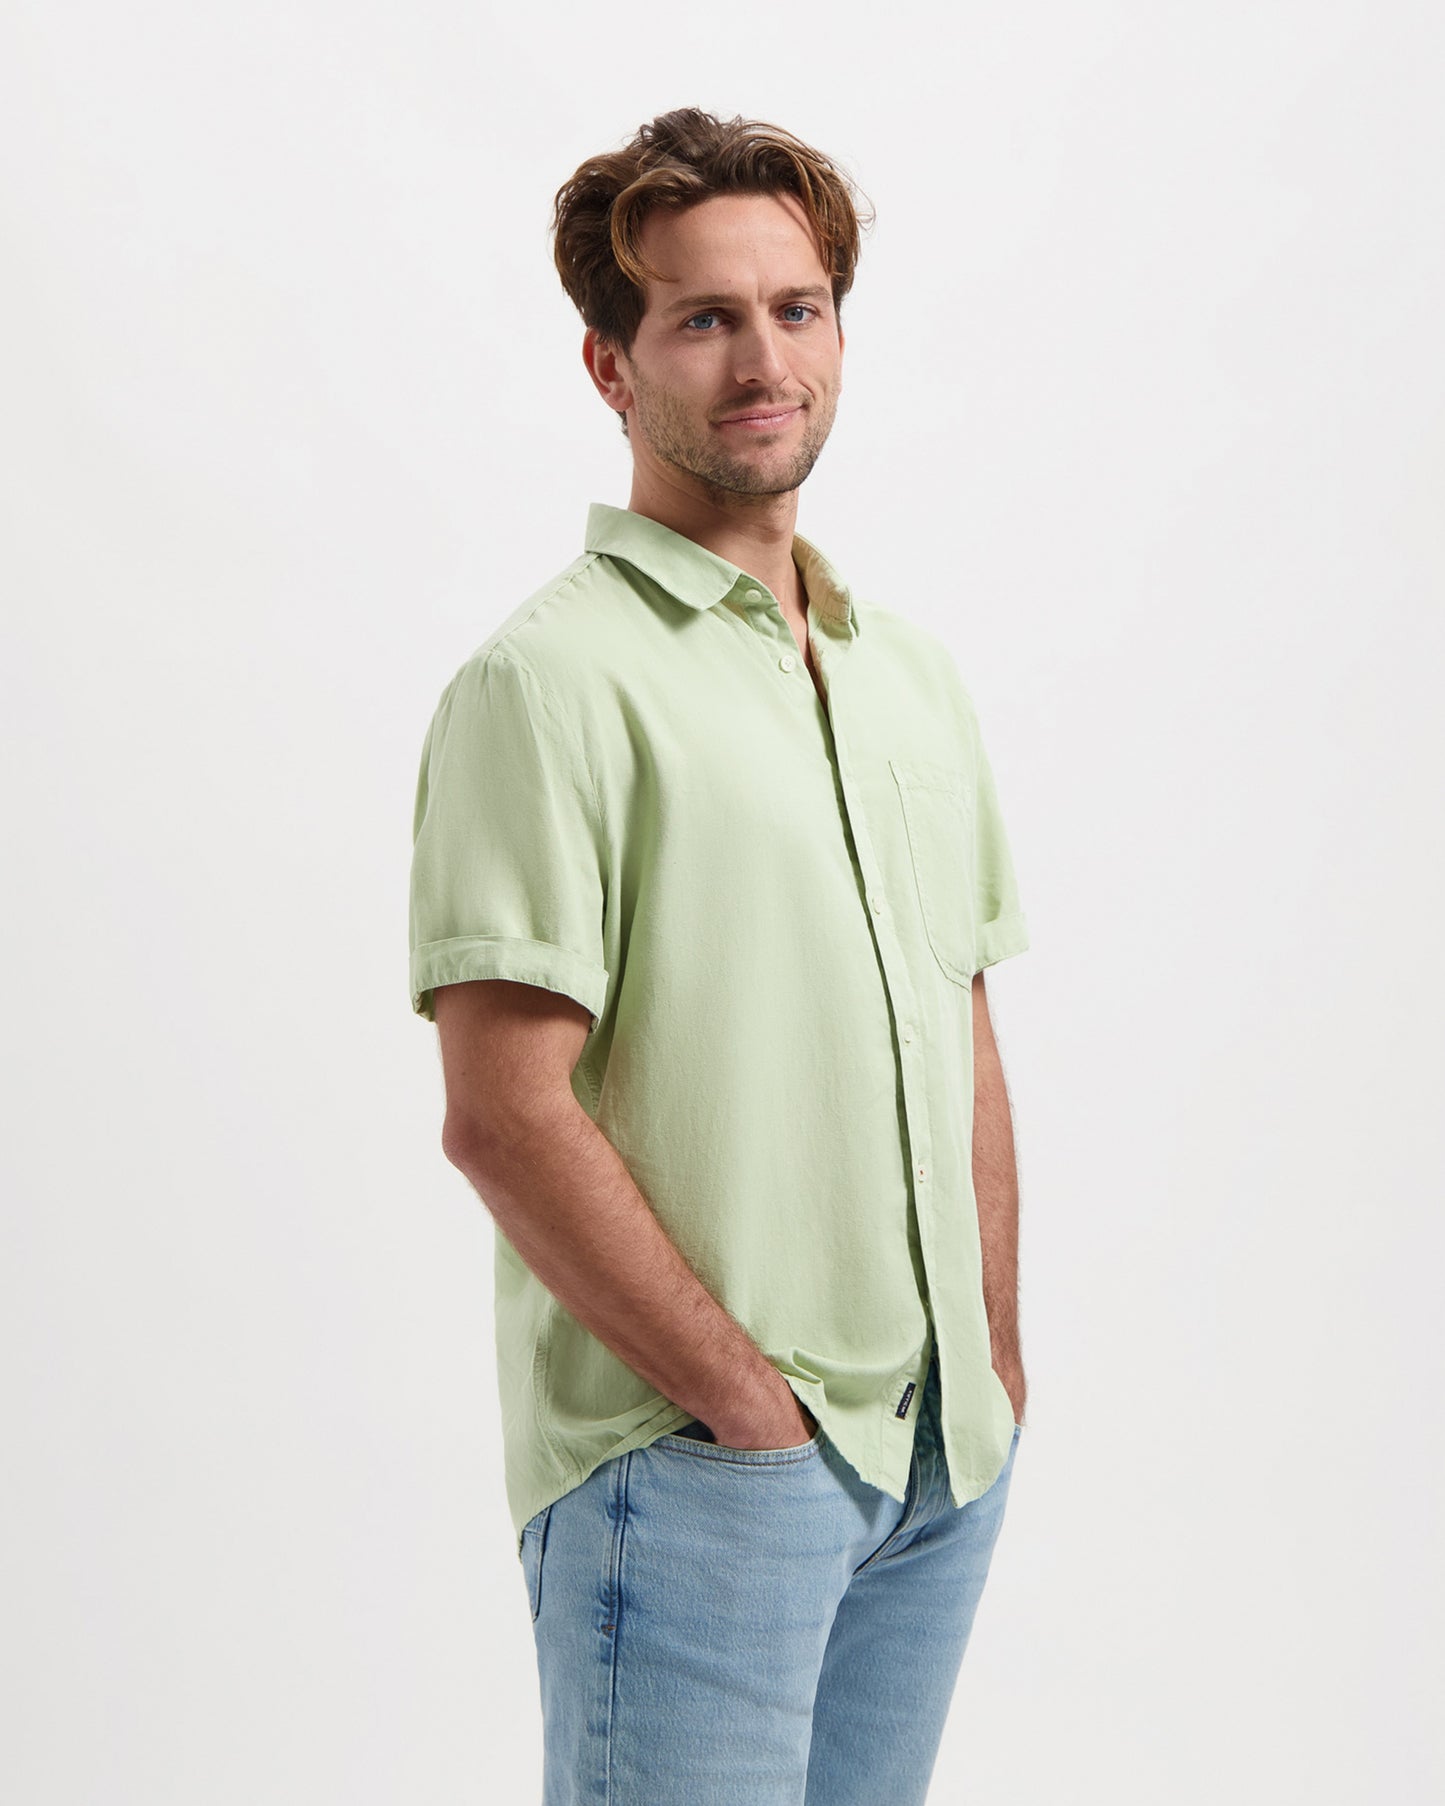 
                  
                    NOLAN Sage Green Shirt
                  
                